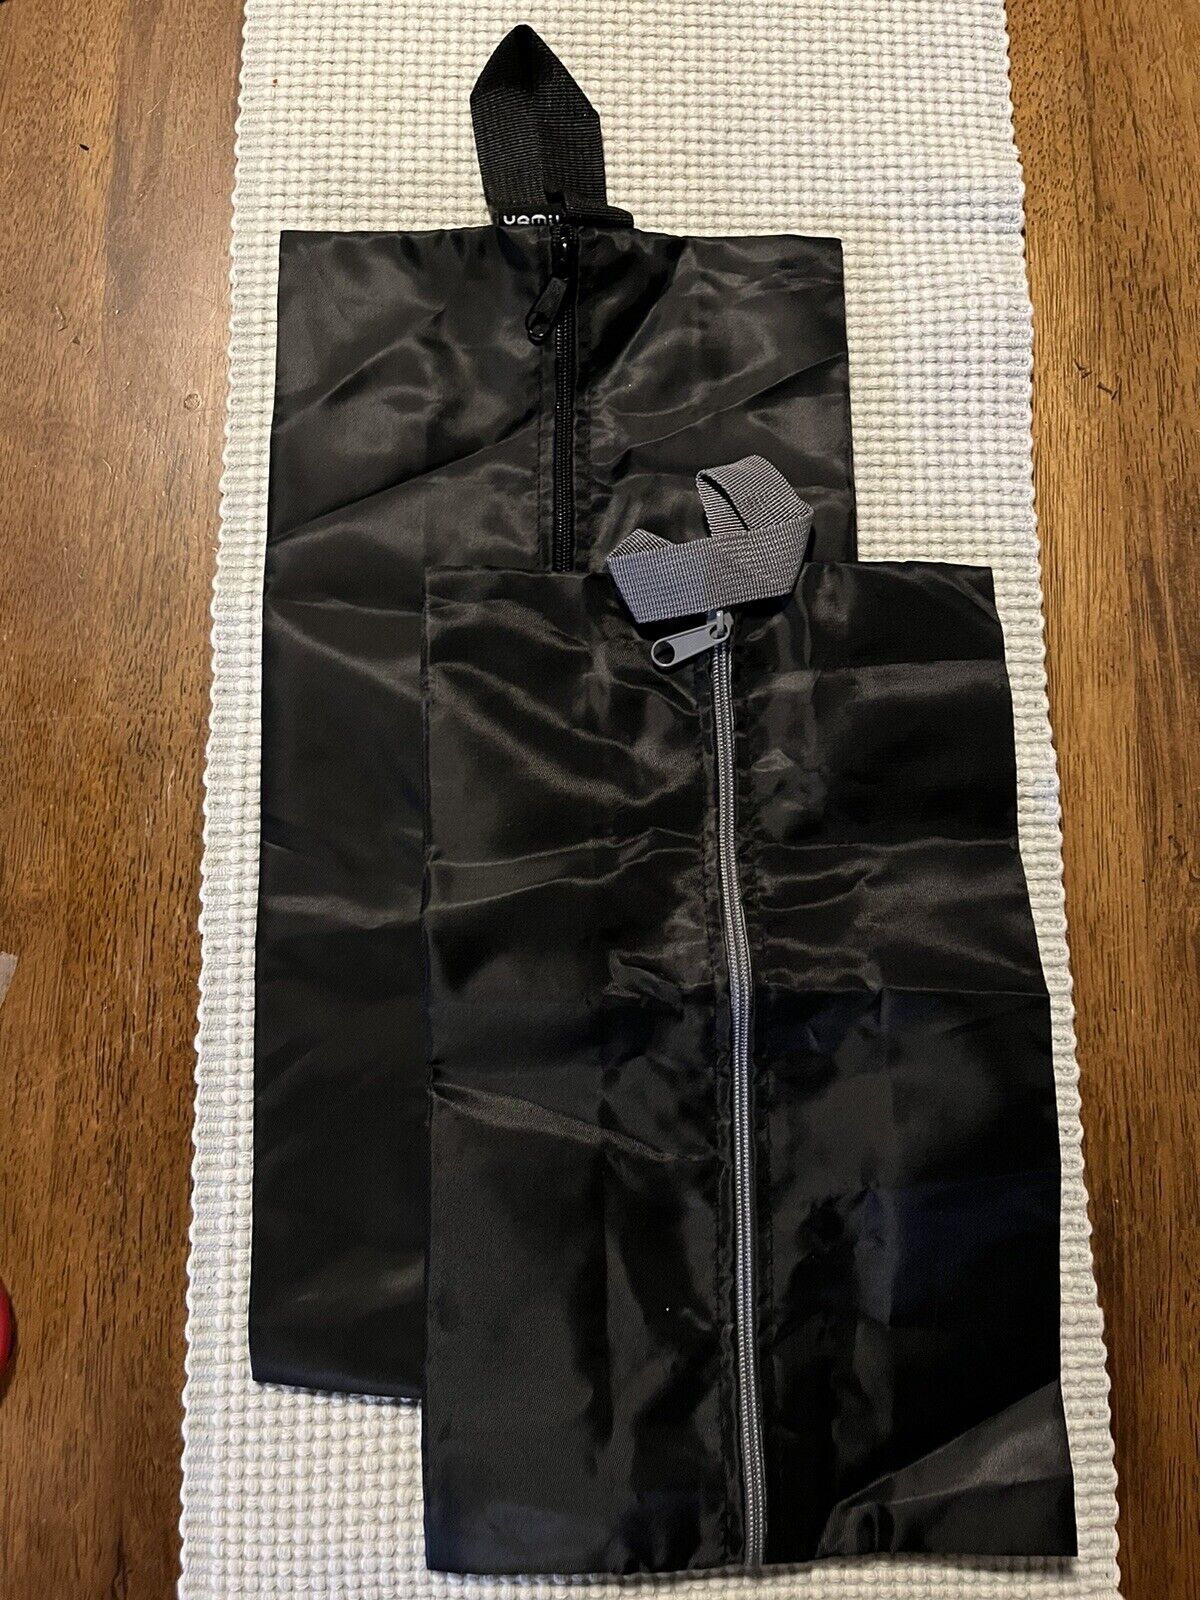 YAMIU Travel Shoe Bags Set of 2 Waterproof Nylon with Zipper for Men Women Black